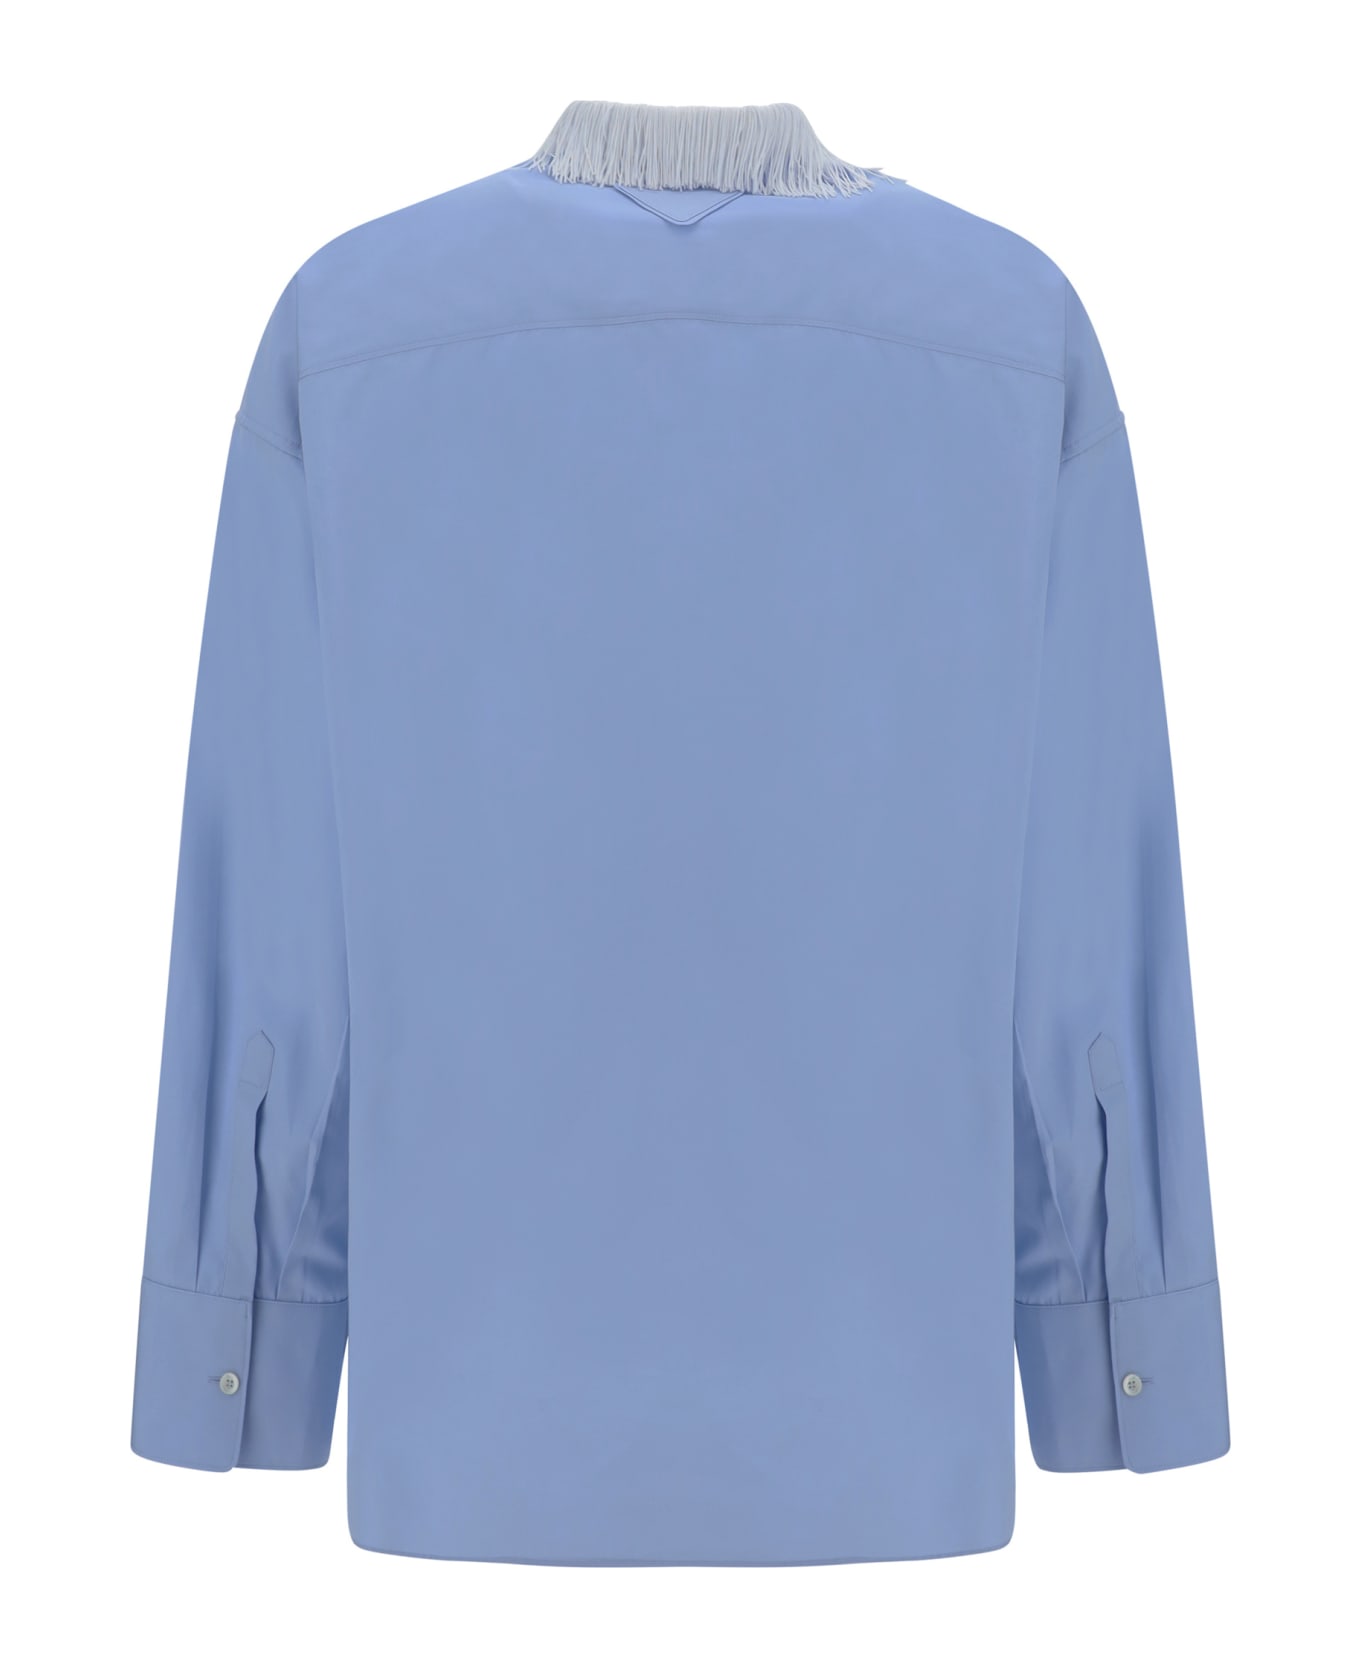 Prada Shirt - Clear Blue シャツ